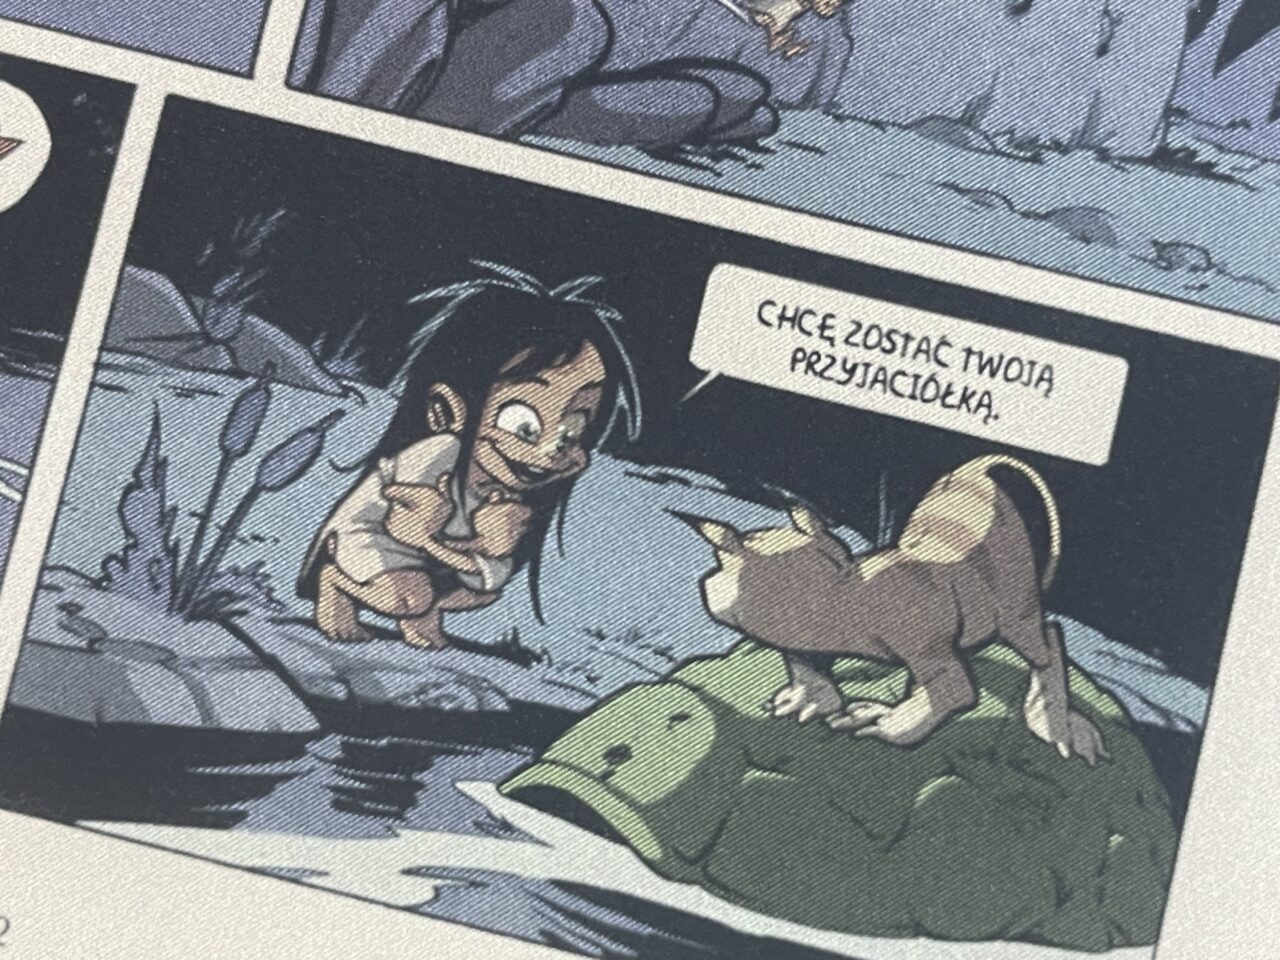 Komiksowa ilustracja przedstawiająca małą postać z długimi włosami rozmawiającą z istotą przypominającą smoka, z tekstem "Chcę zostać Twoją przyjaciółką".